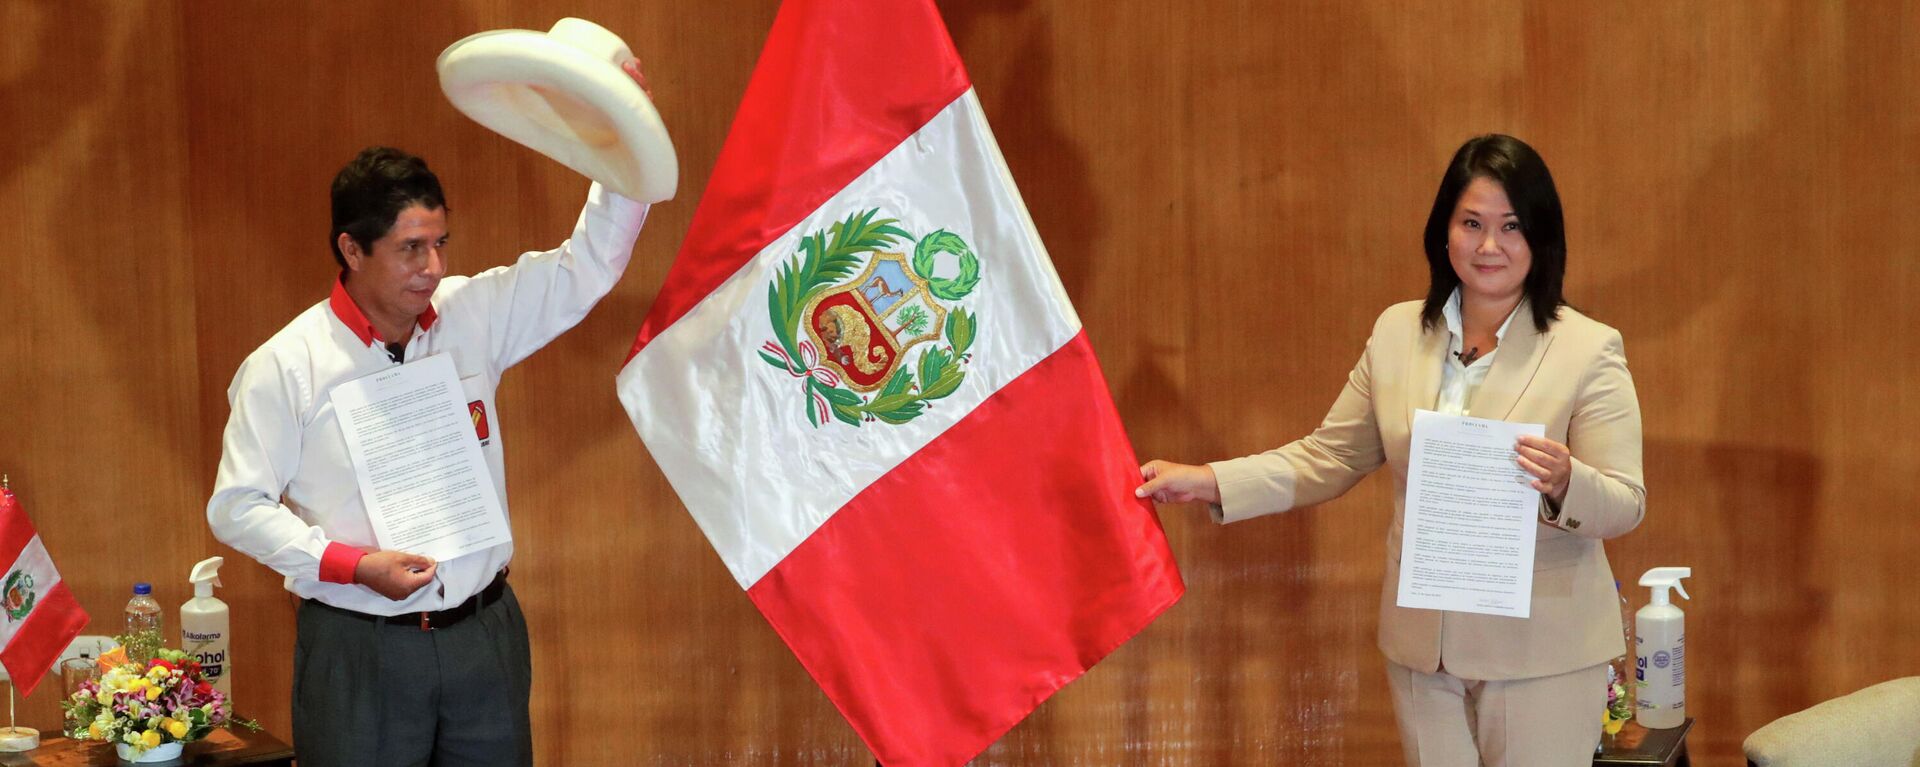 Los candidatos Pedro Castillo (Perú Libre, izquierda) y Keiko Fujimori (Fuerza Popular, derecha) - Sputnik Mundo, 1920, 24.05.2021